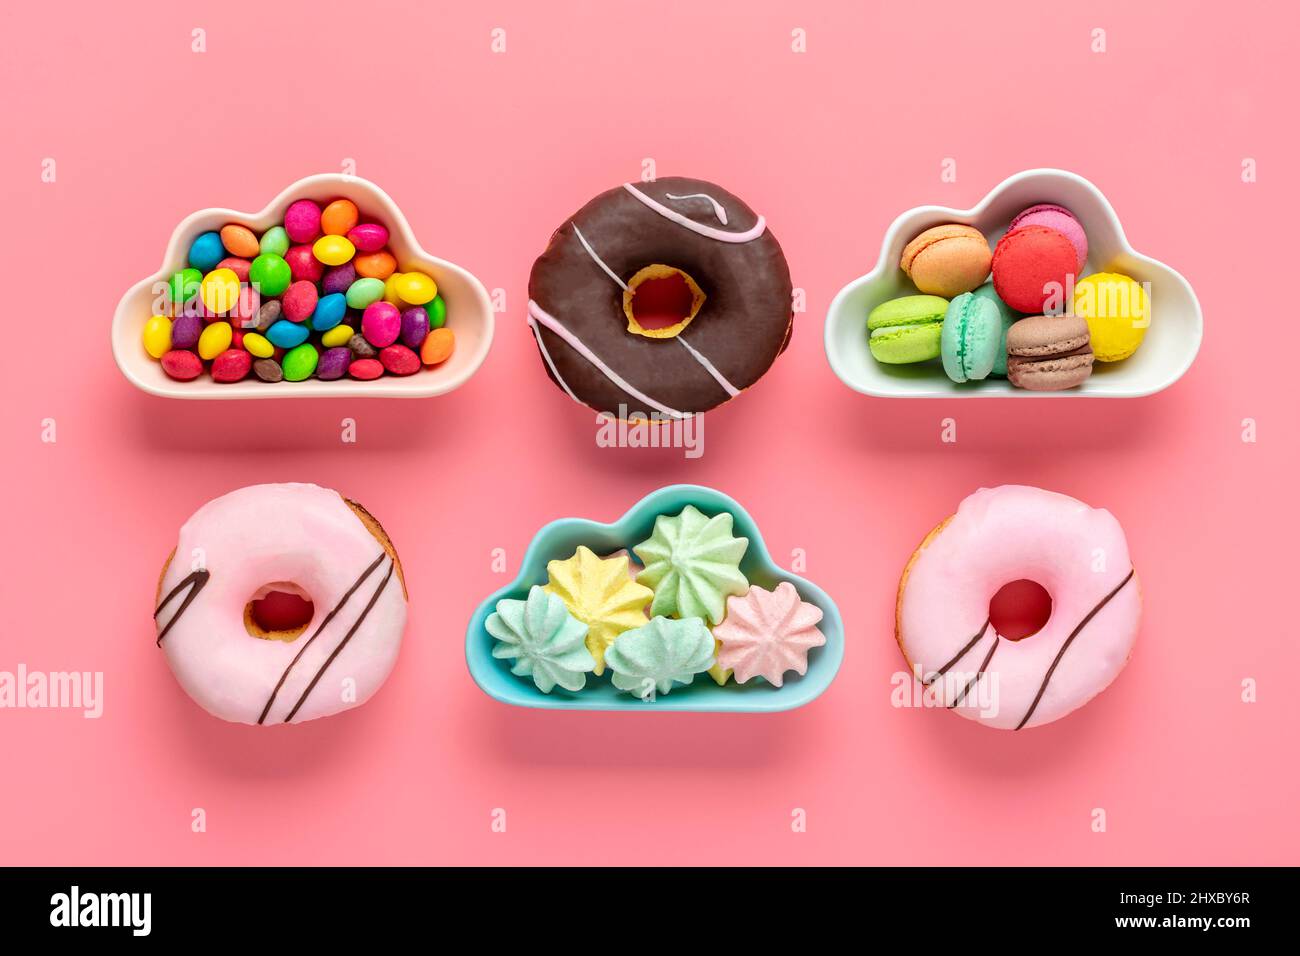 Bonbons et meringues dans un bol en forme de nuage, chocolat avec garniture colorée et donut rose isolé sur fond rose plat Lay Top View Knolling Banque D'Images